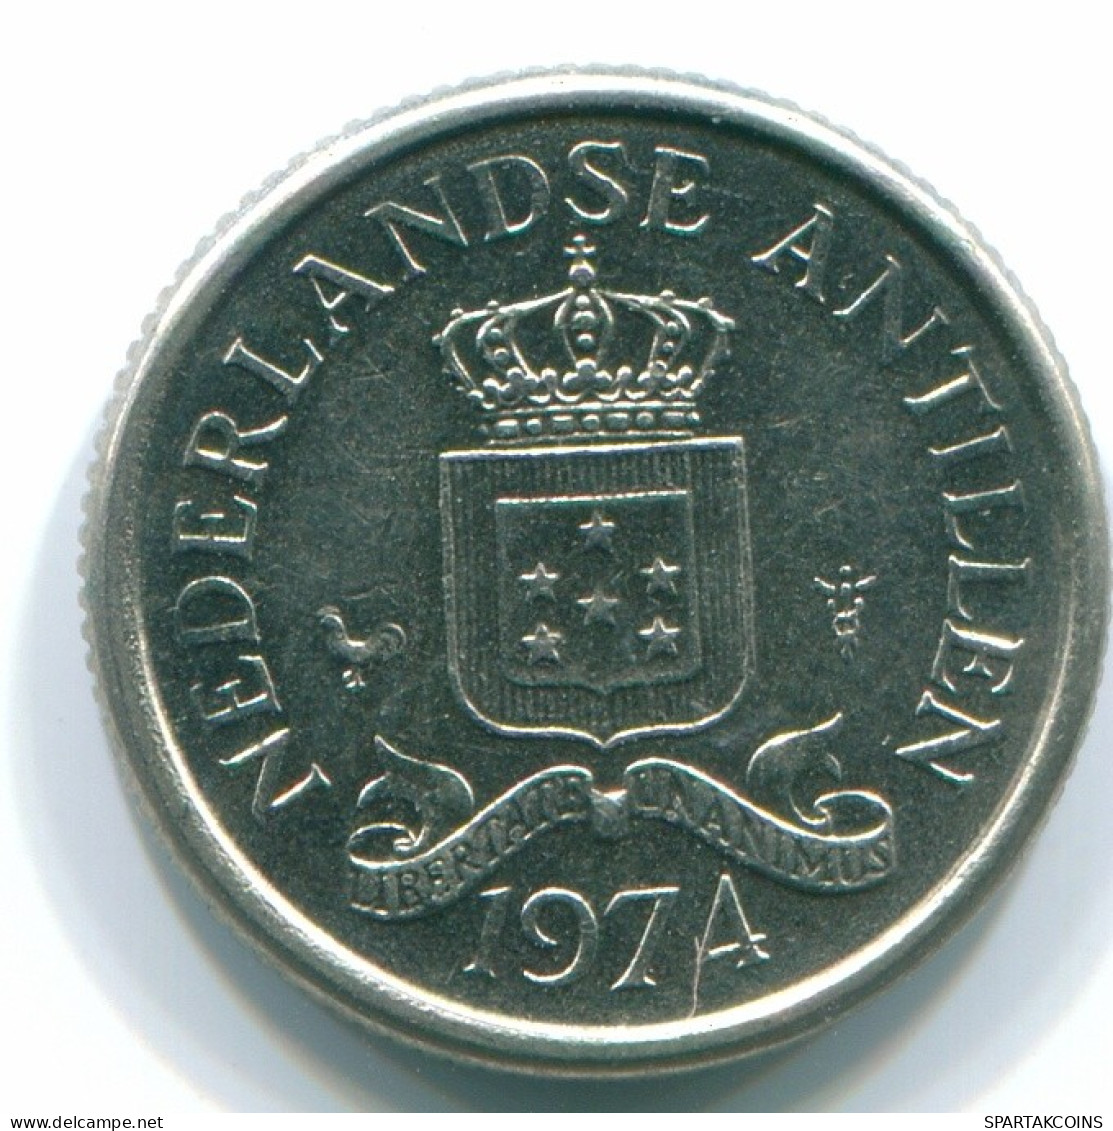 10 CENTS 1974 NIEDERLÄNDISCHE ANTILLEN Nickel Koloniale Münze #S13525.D.A - Niederländische Antillen